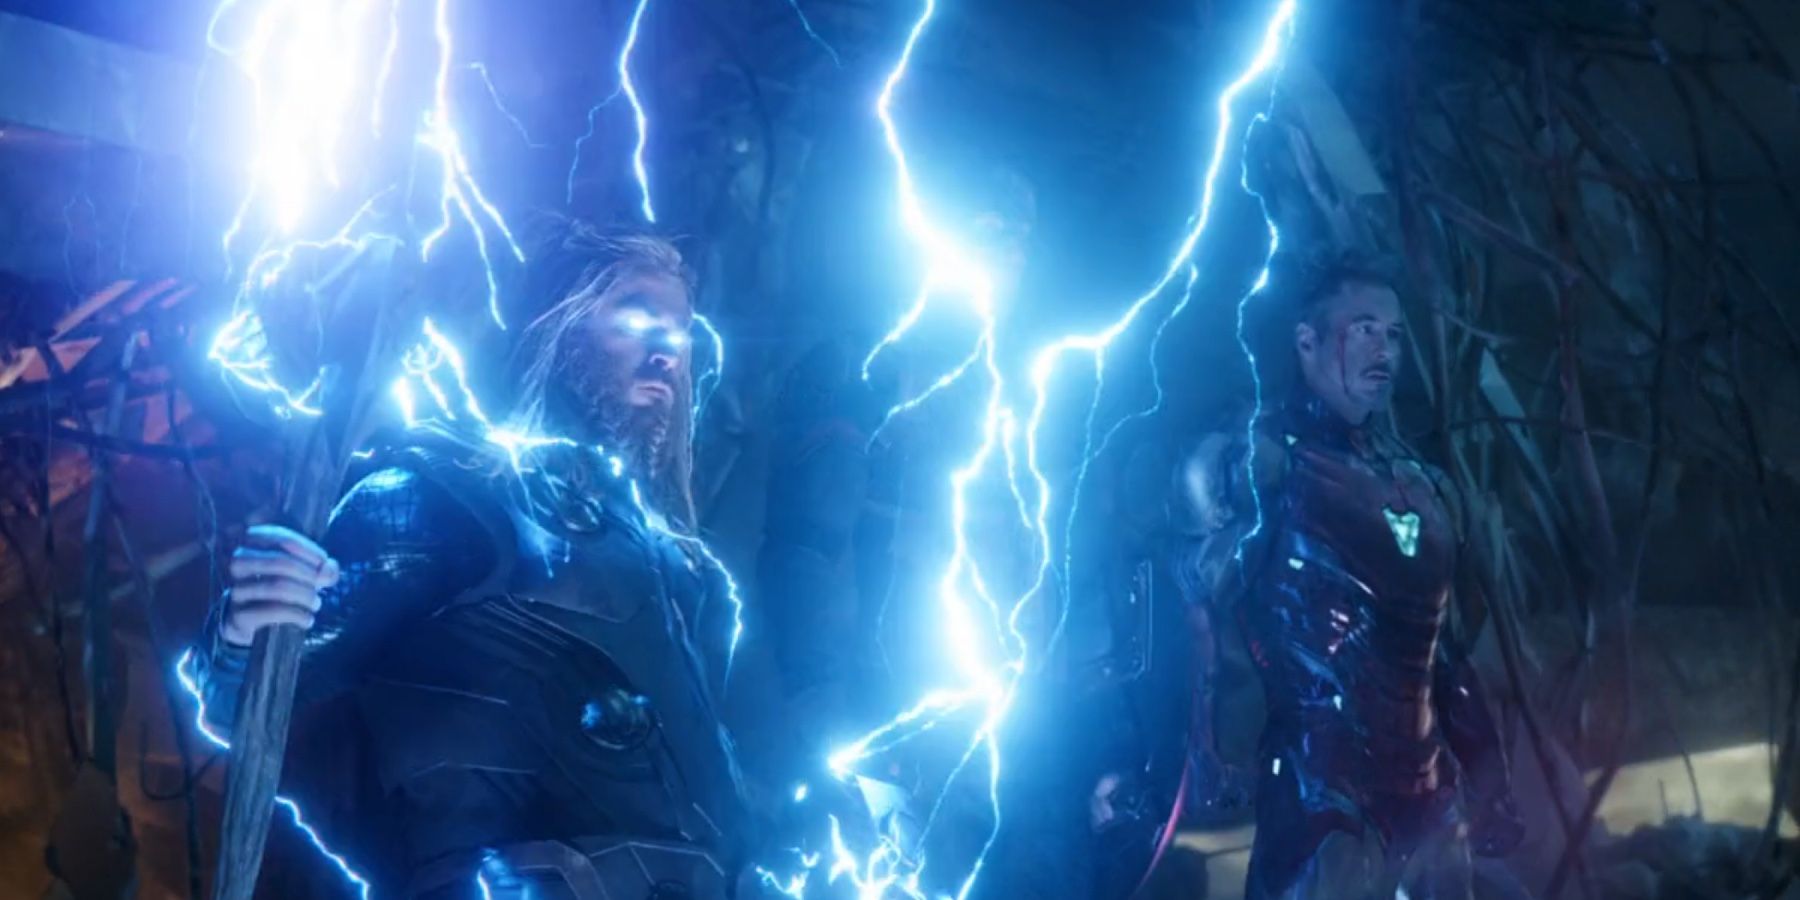 Avengers 4 Endgame Thor Lightning Wielding Mjolnir and Stormbreaker